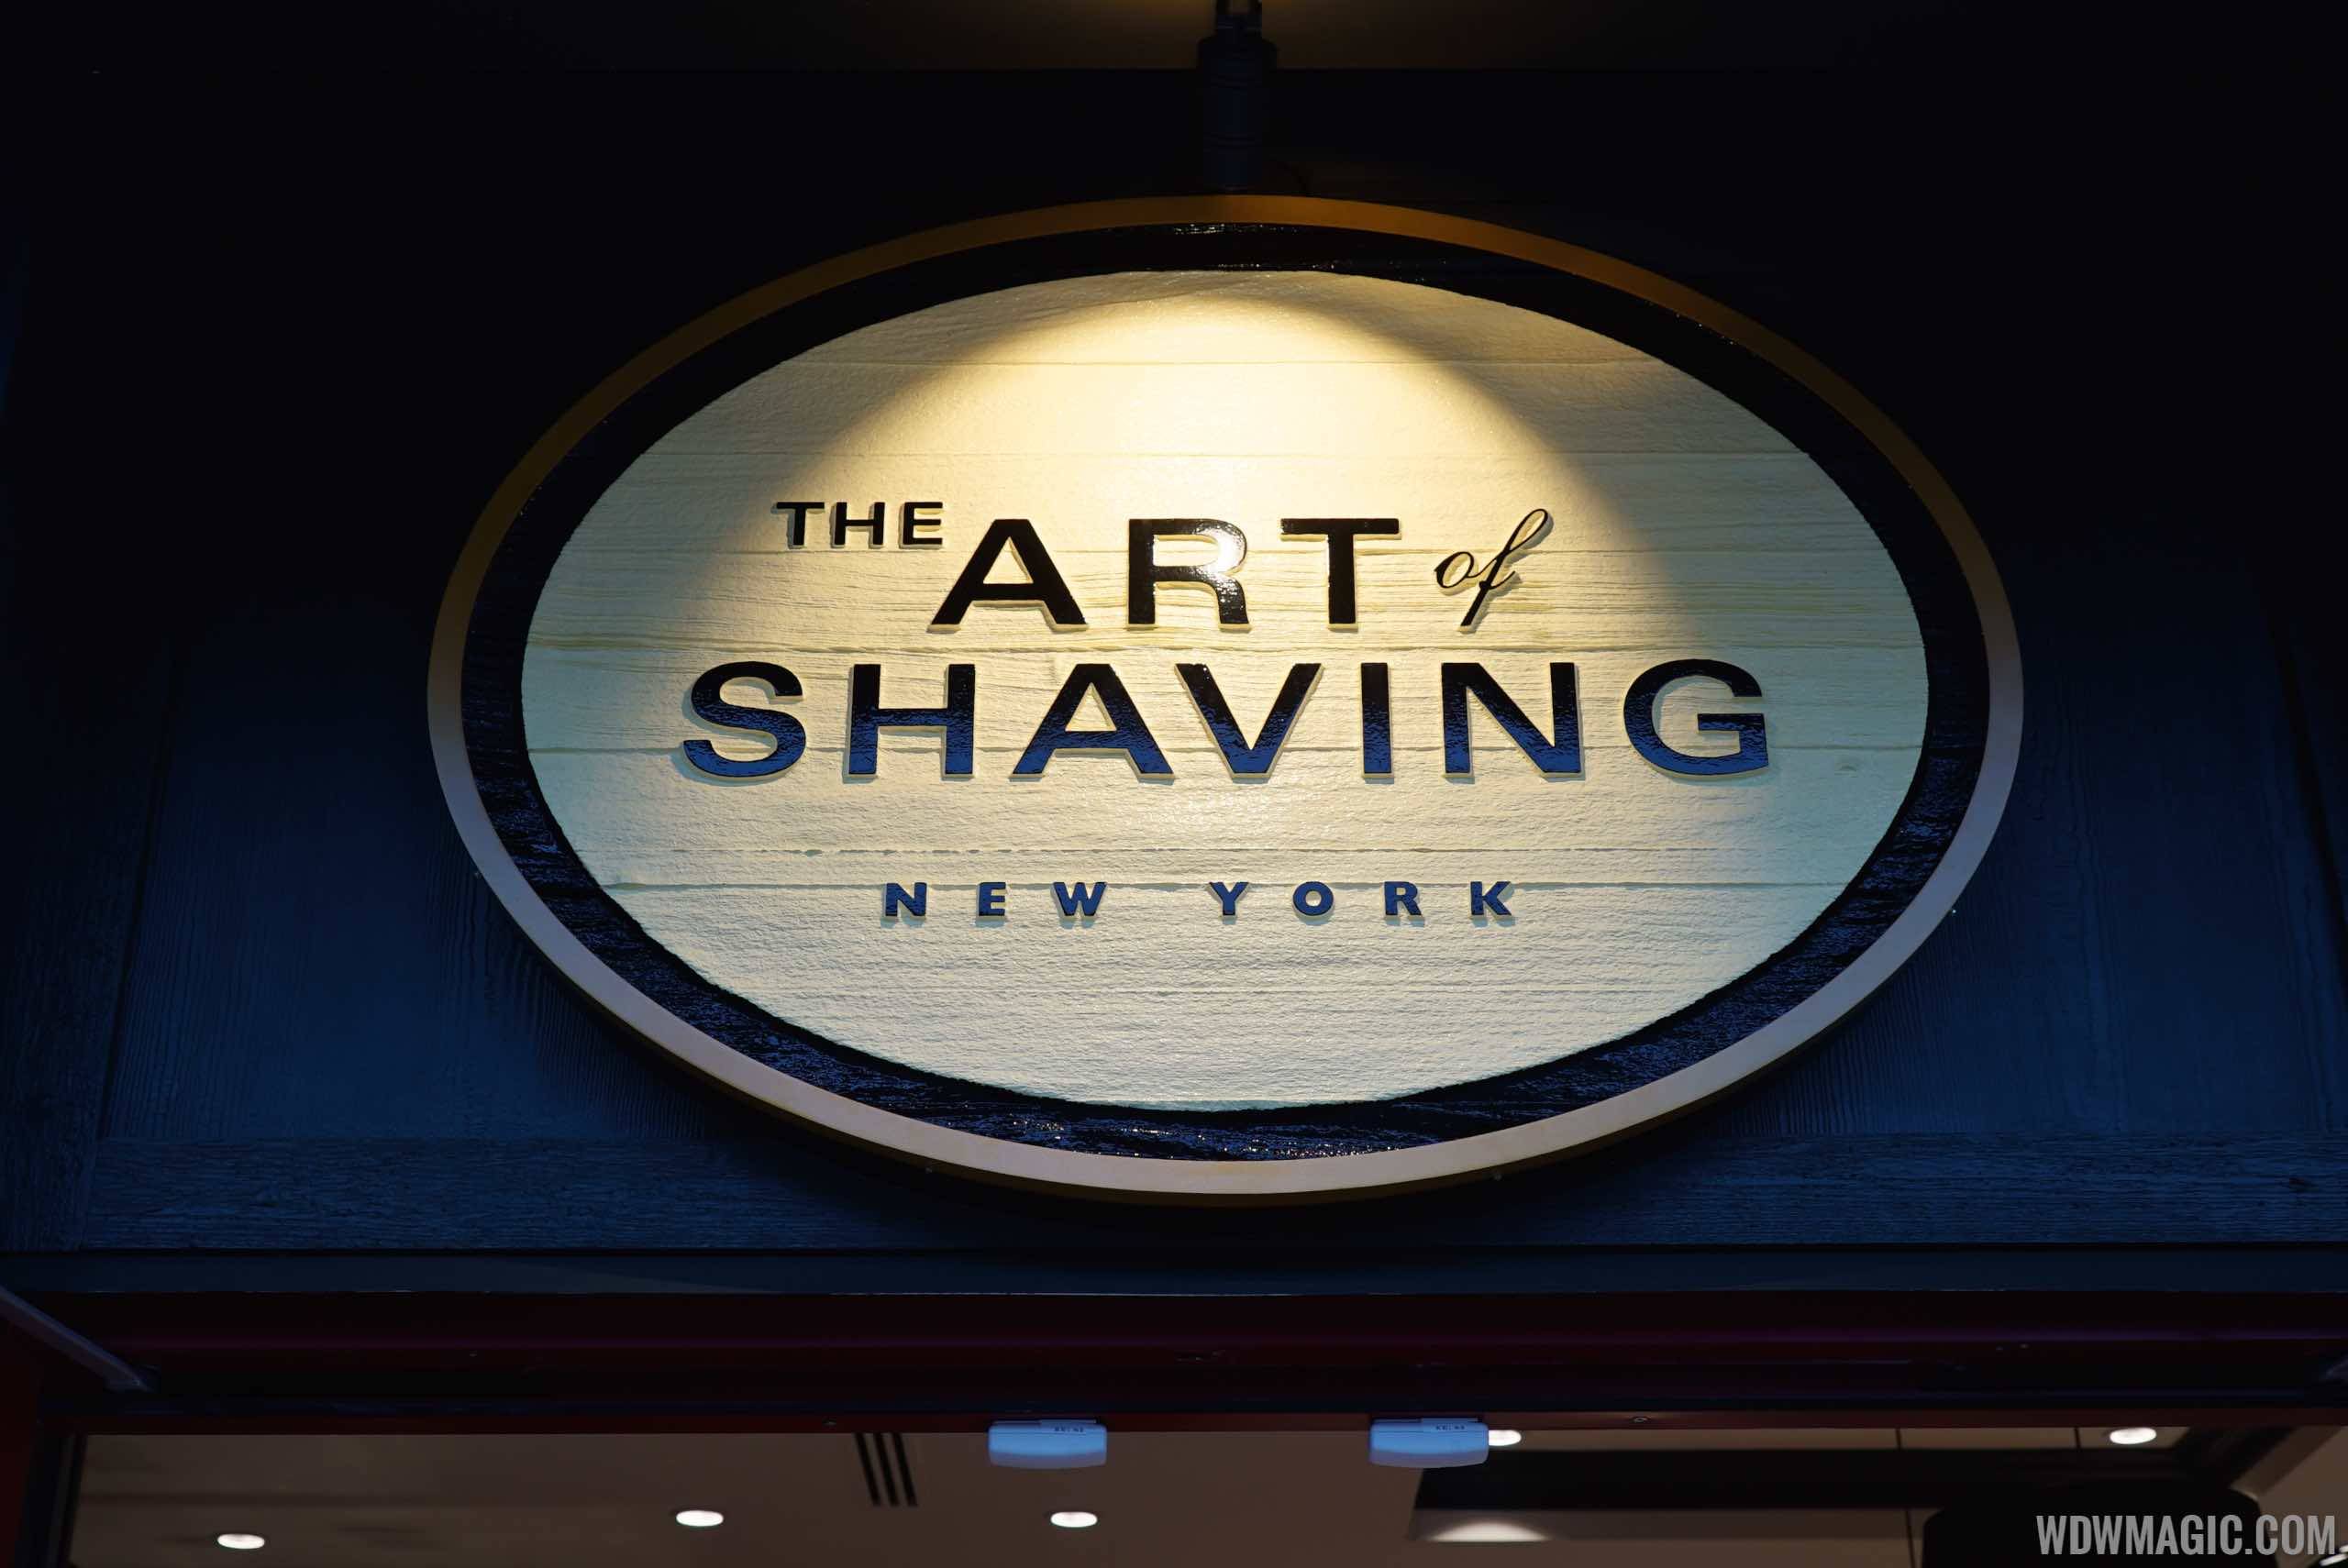 Art of Shaving overview